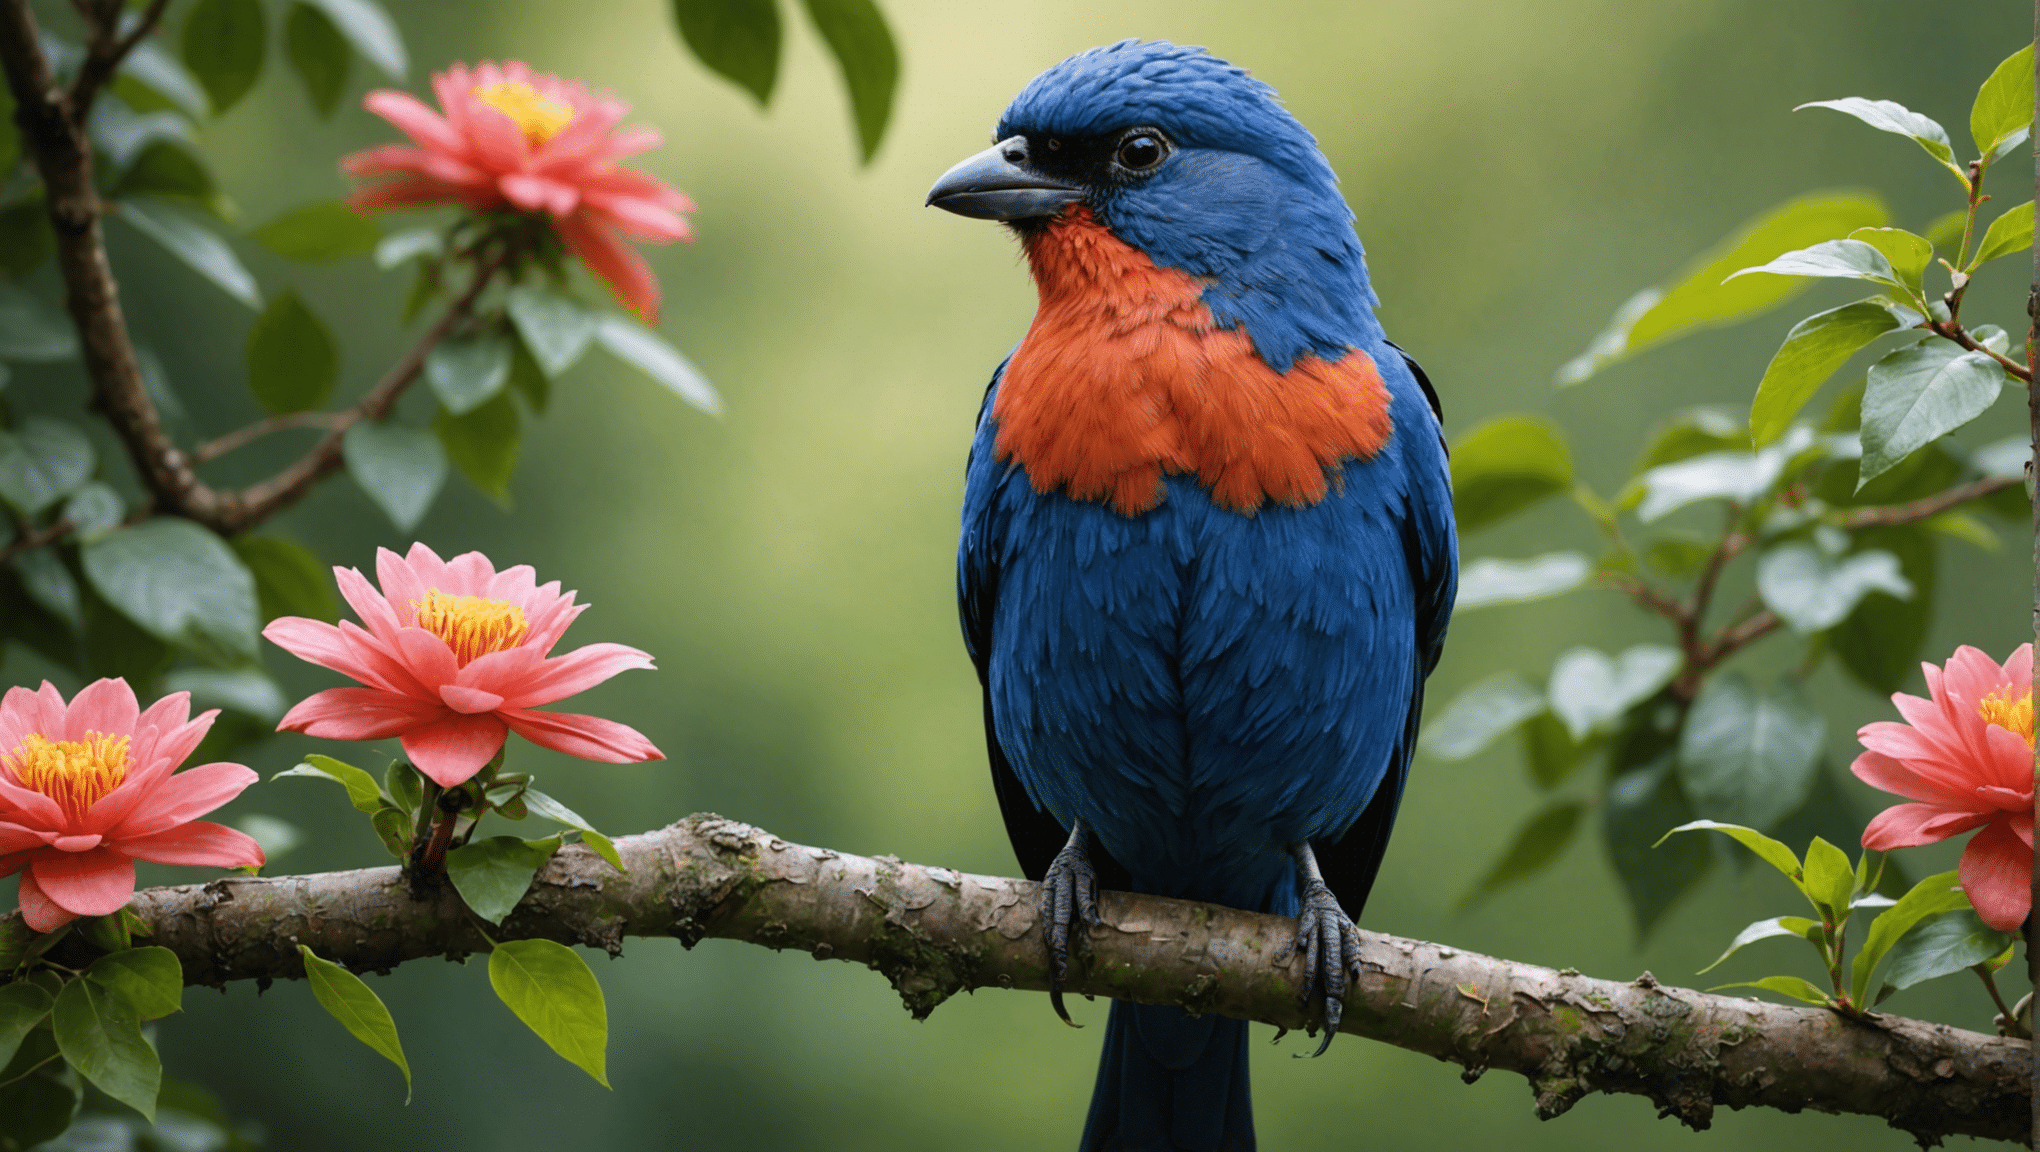 gli uccelli brutti sono davvero belli? scoprilo in questa affascinante esplorazione della bellezza nascosta della natura e della sorprendente verità dietro la bellezza di uccelli apparentemente brutti.